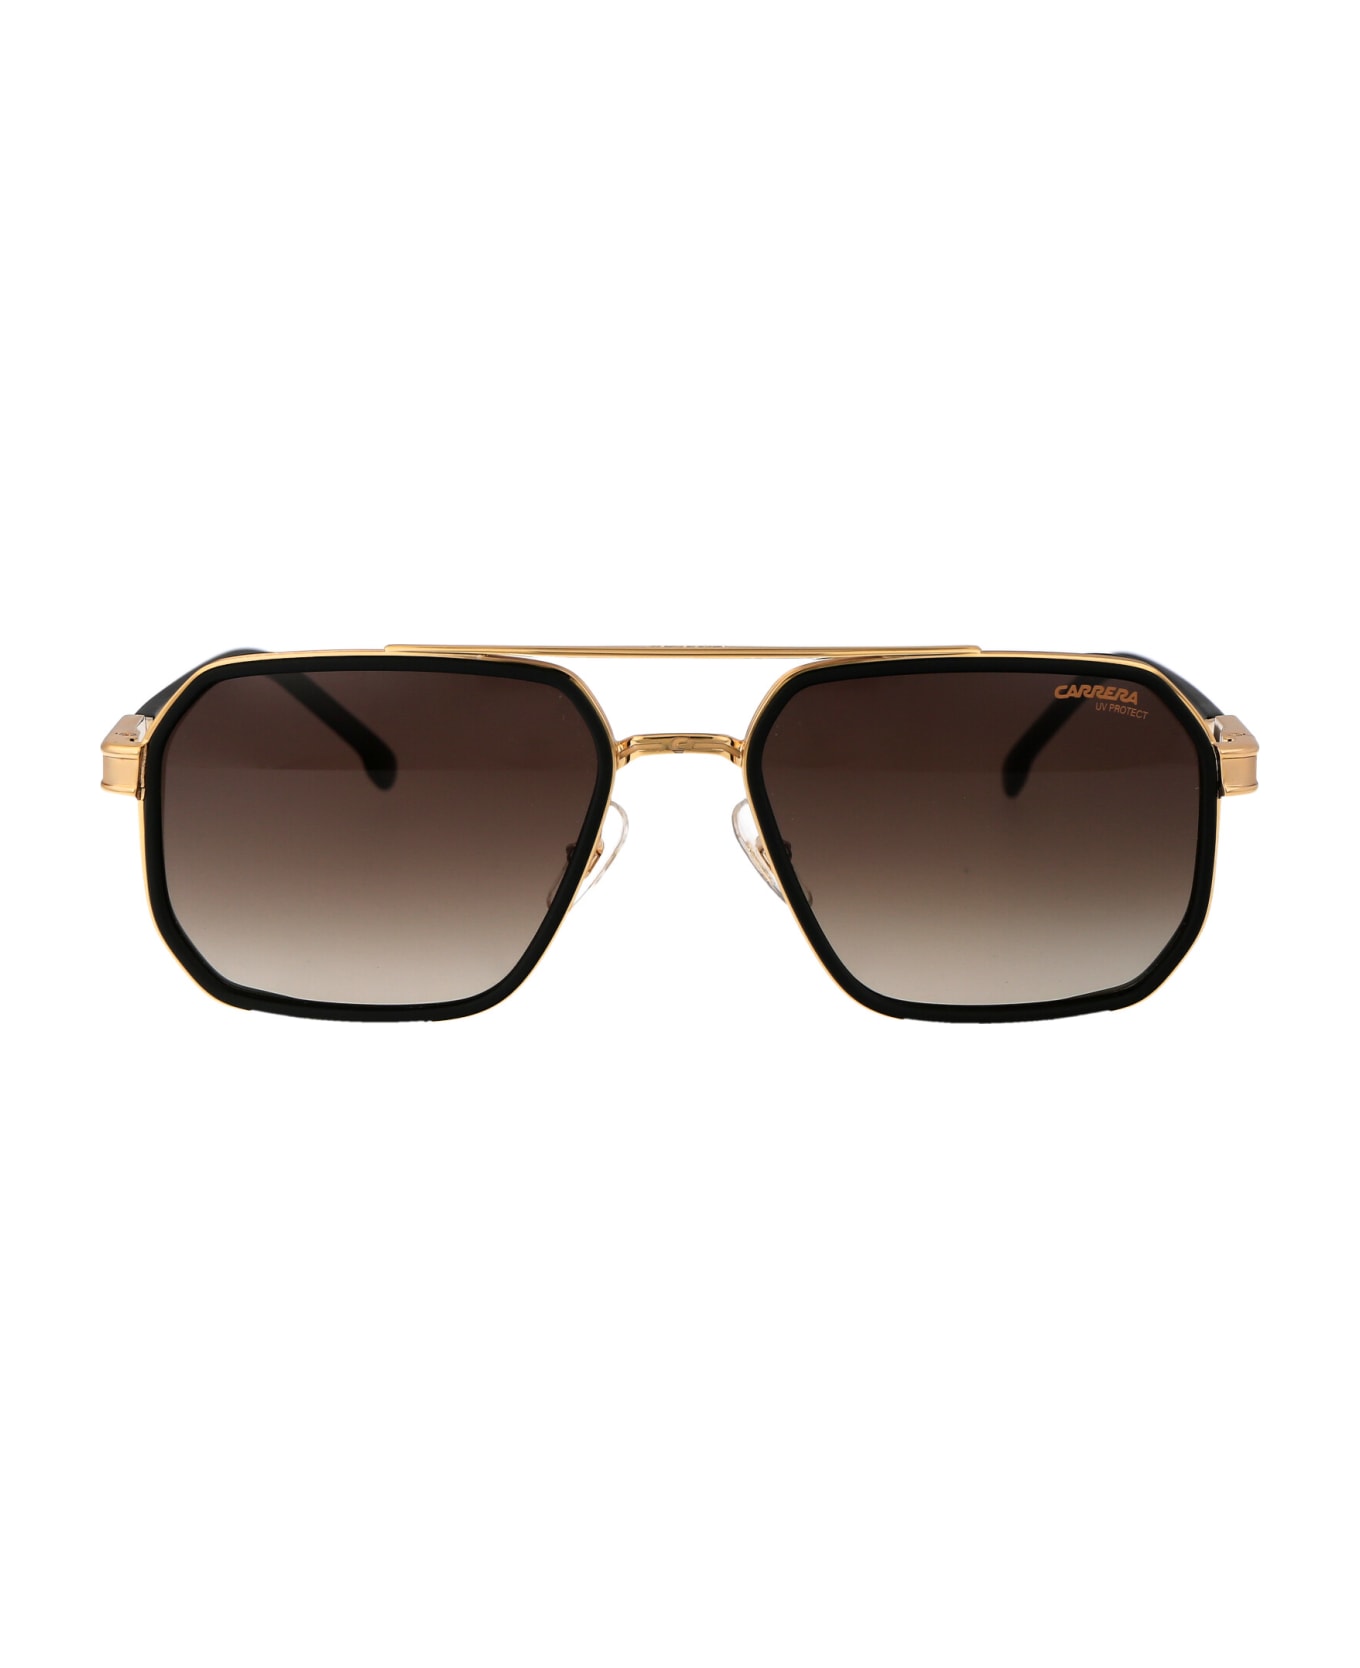 Carrera 1069/s Sunglasses - I4686 MT BK GD サングラス